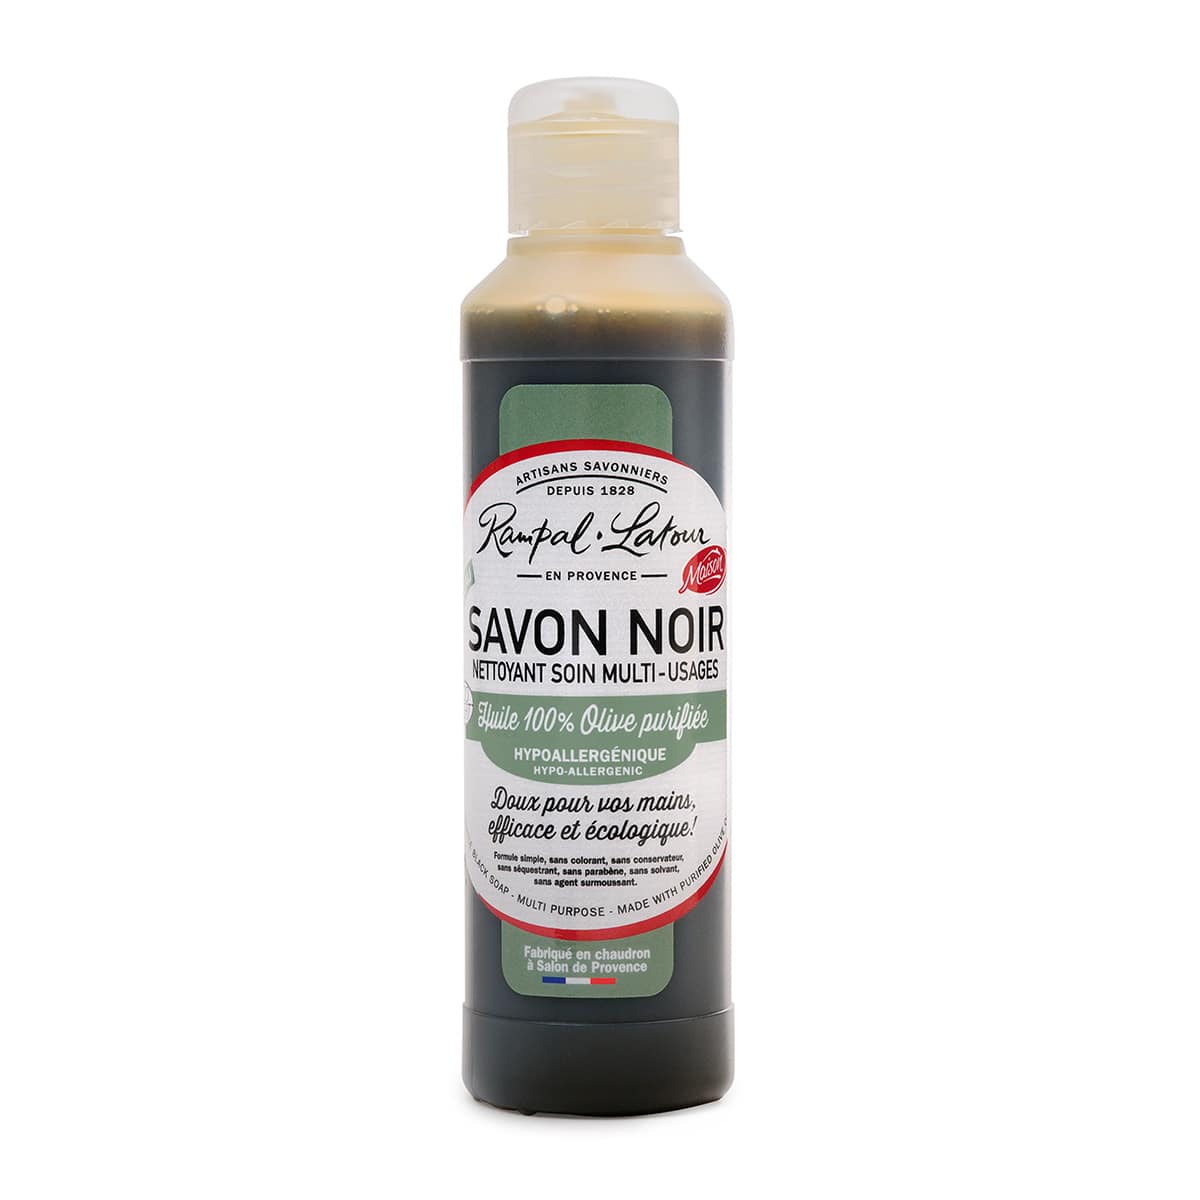 Savon noir à l'huile d'olive 250ml - Ecodétergent